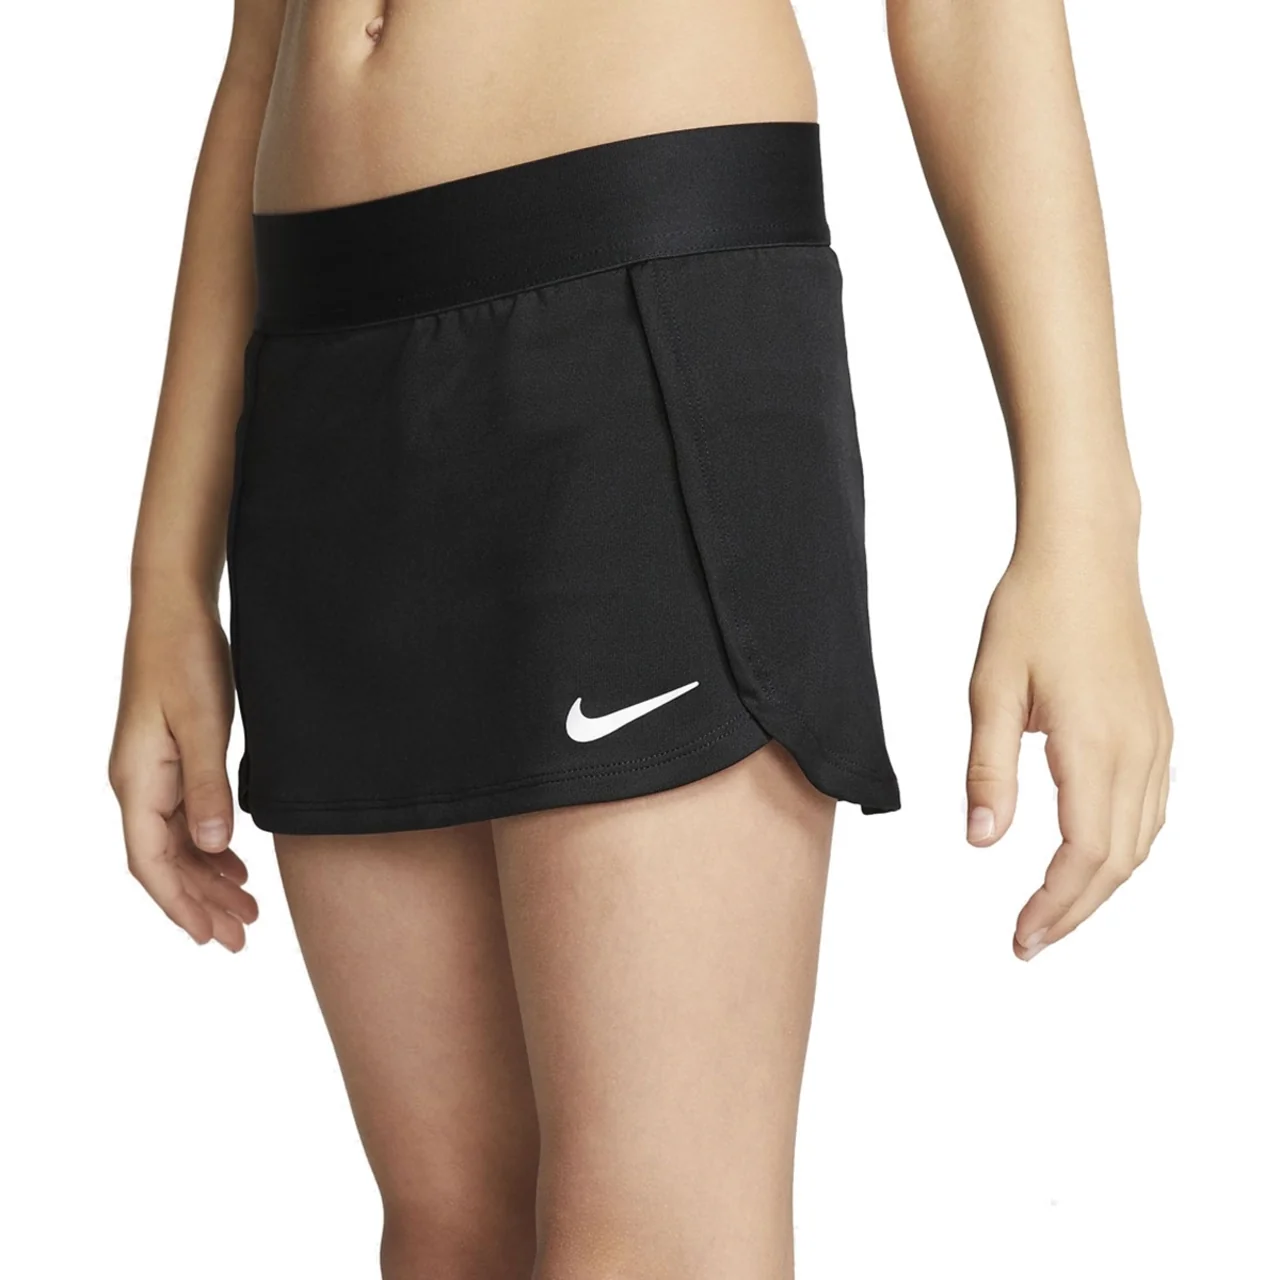 Nike Court Skirt Girls Black